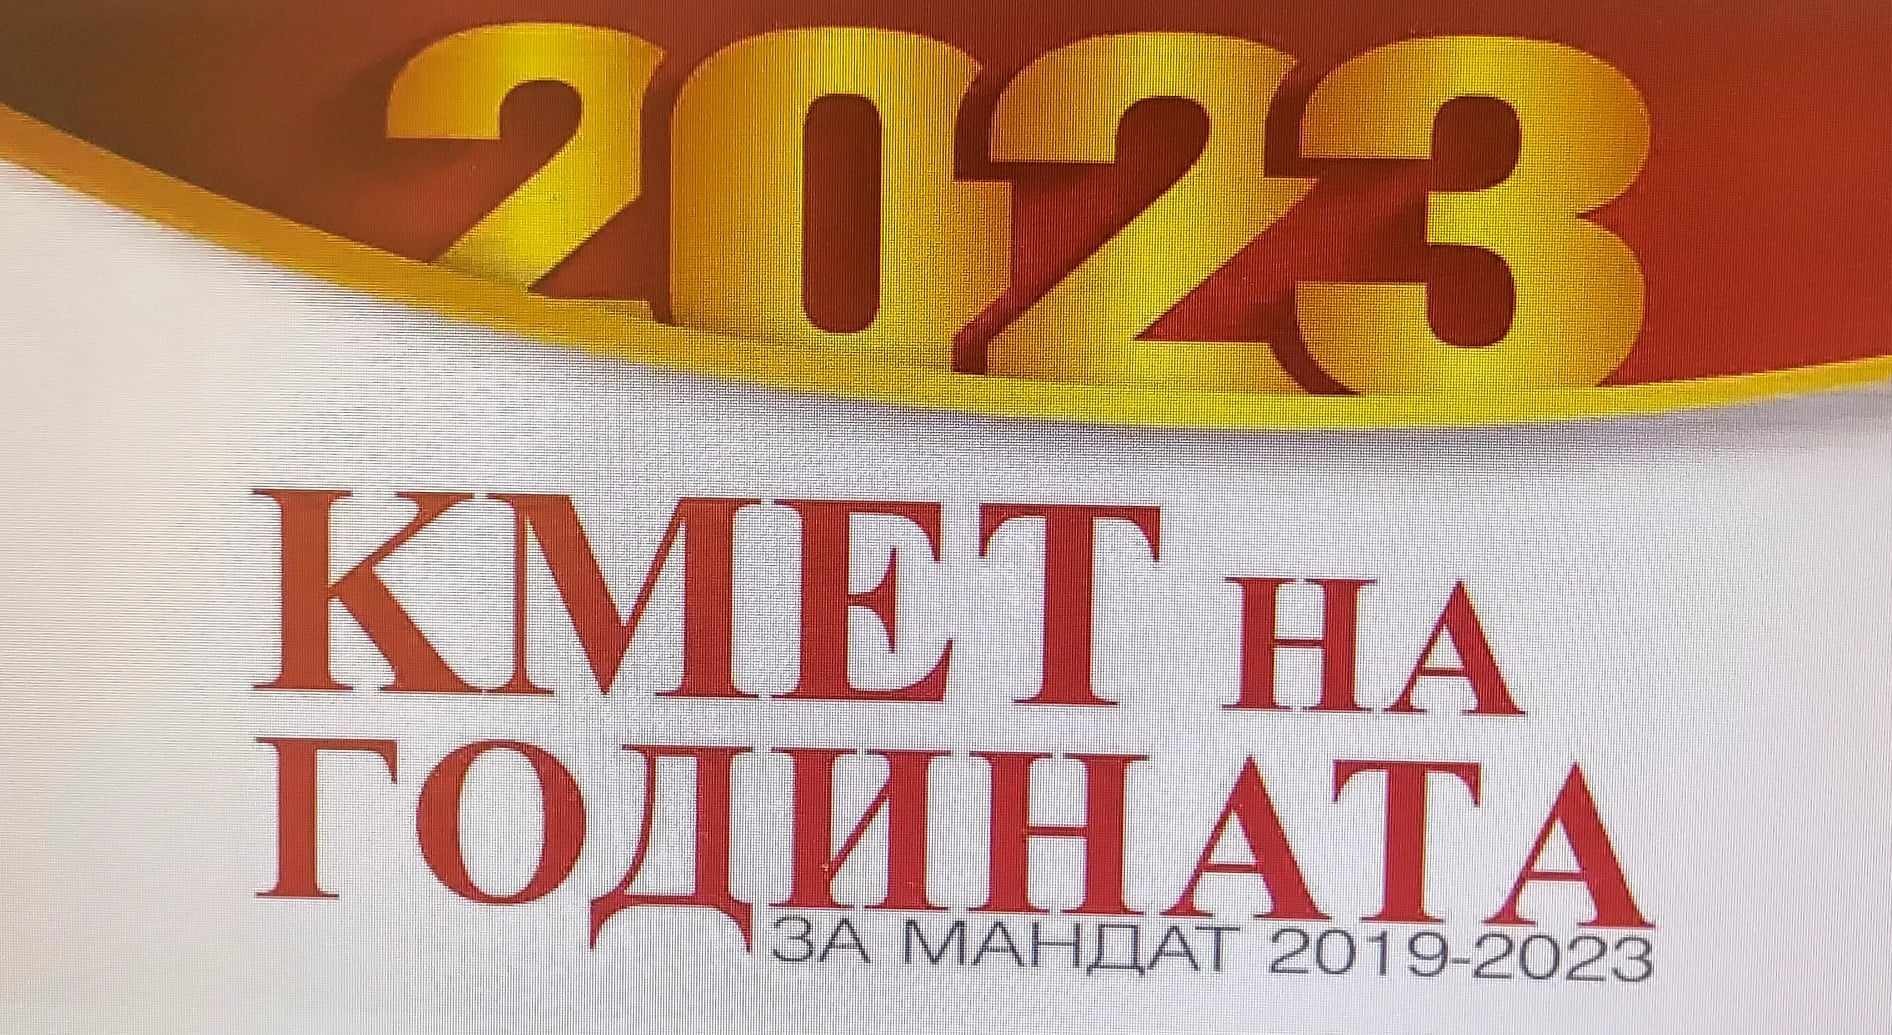 Започва конкурсът „Кмет на годината“ за мандат 2019 – 2023 г.
